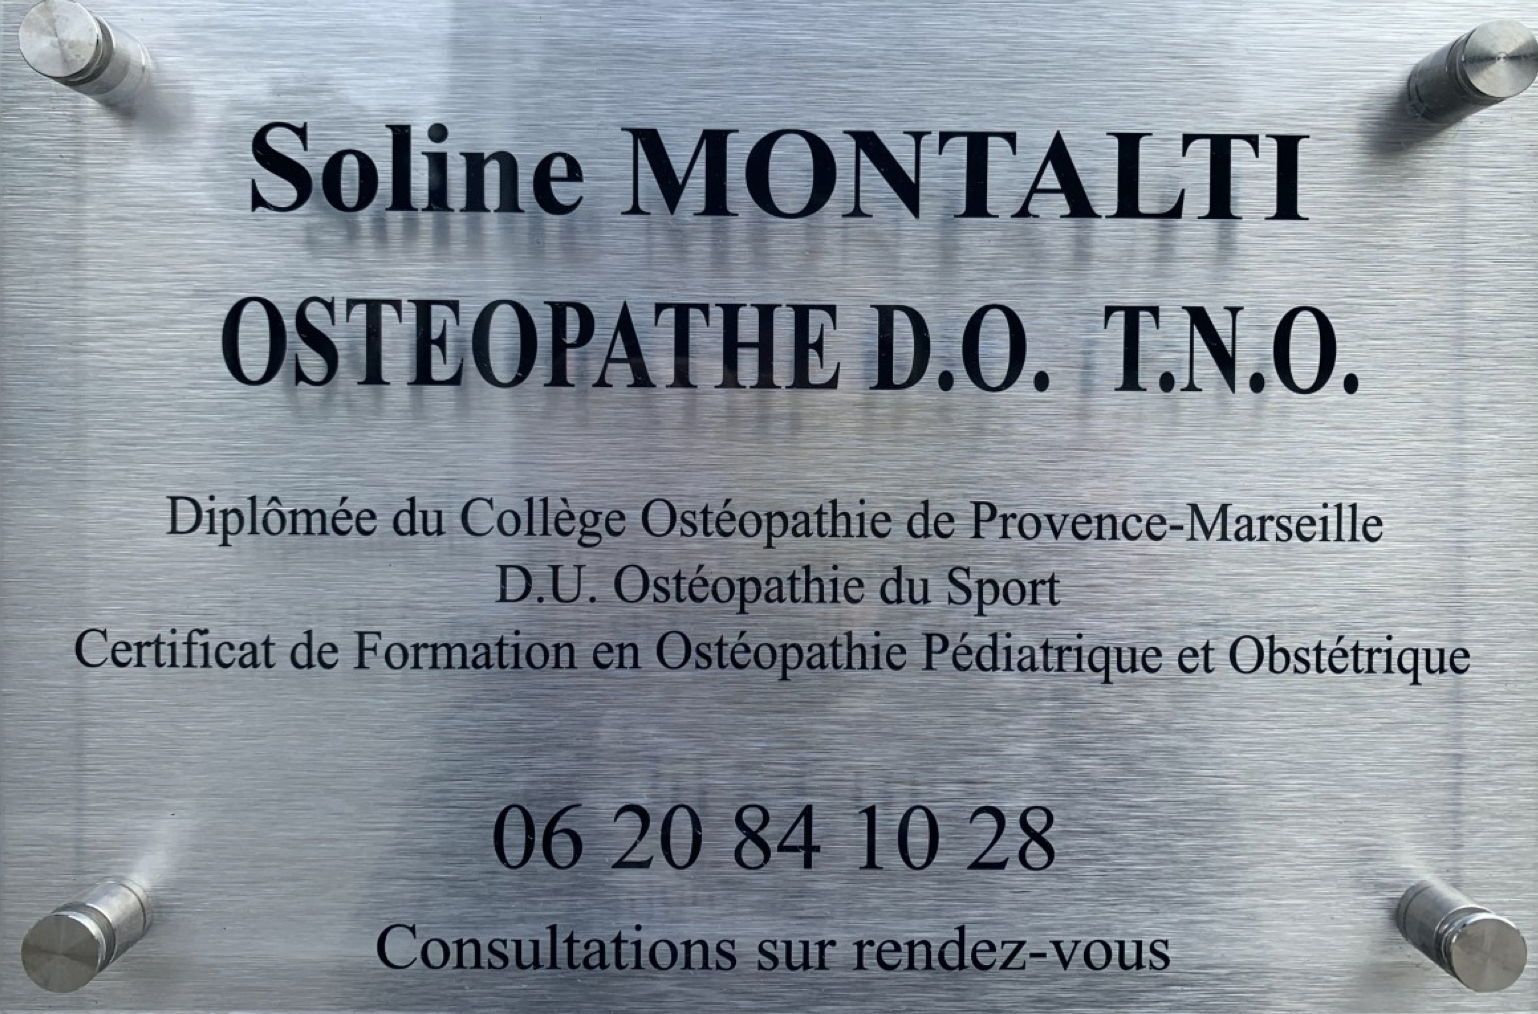 Plaque d'ostéopathe, Soline MONTALTI